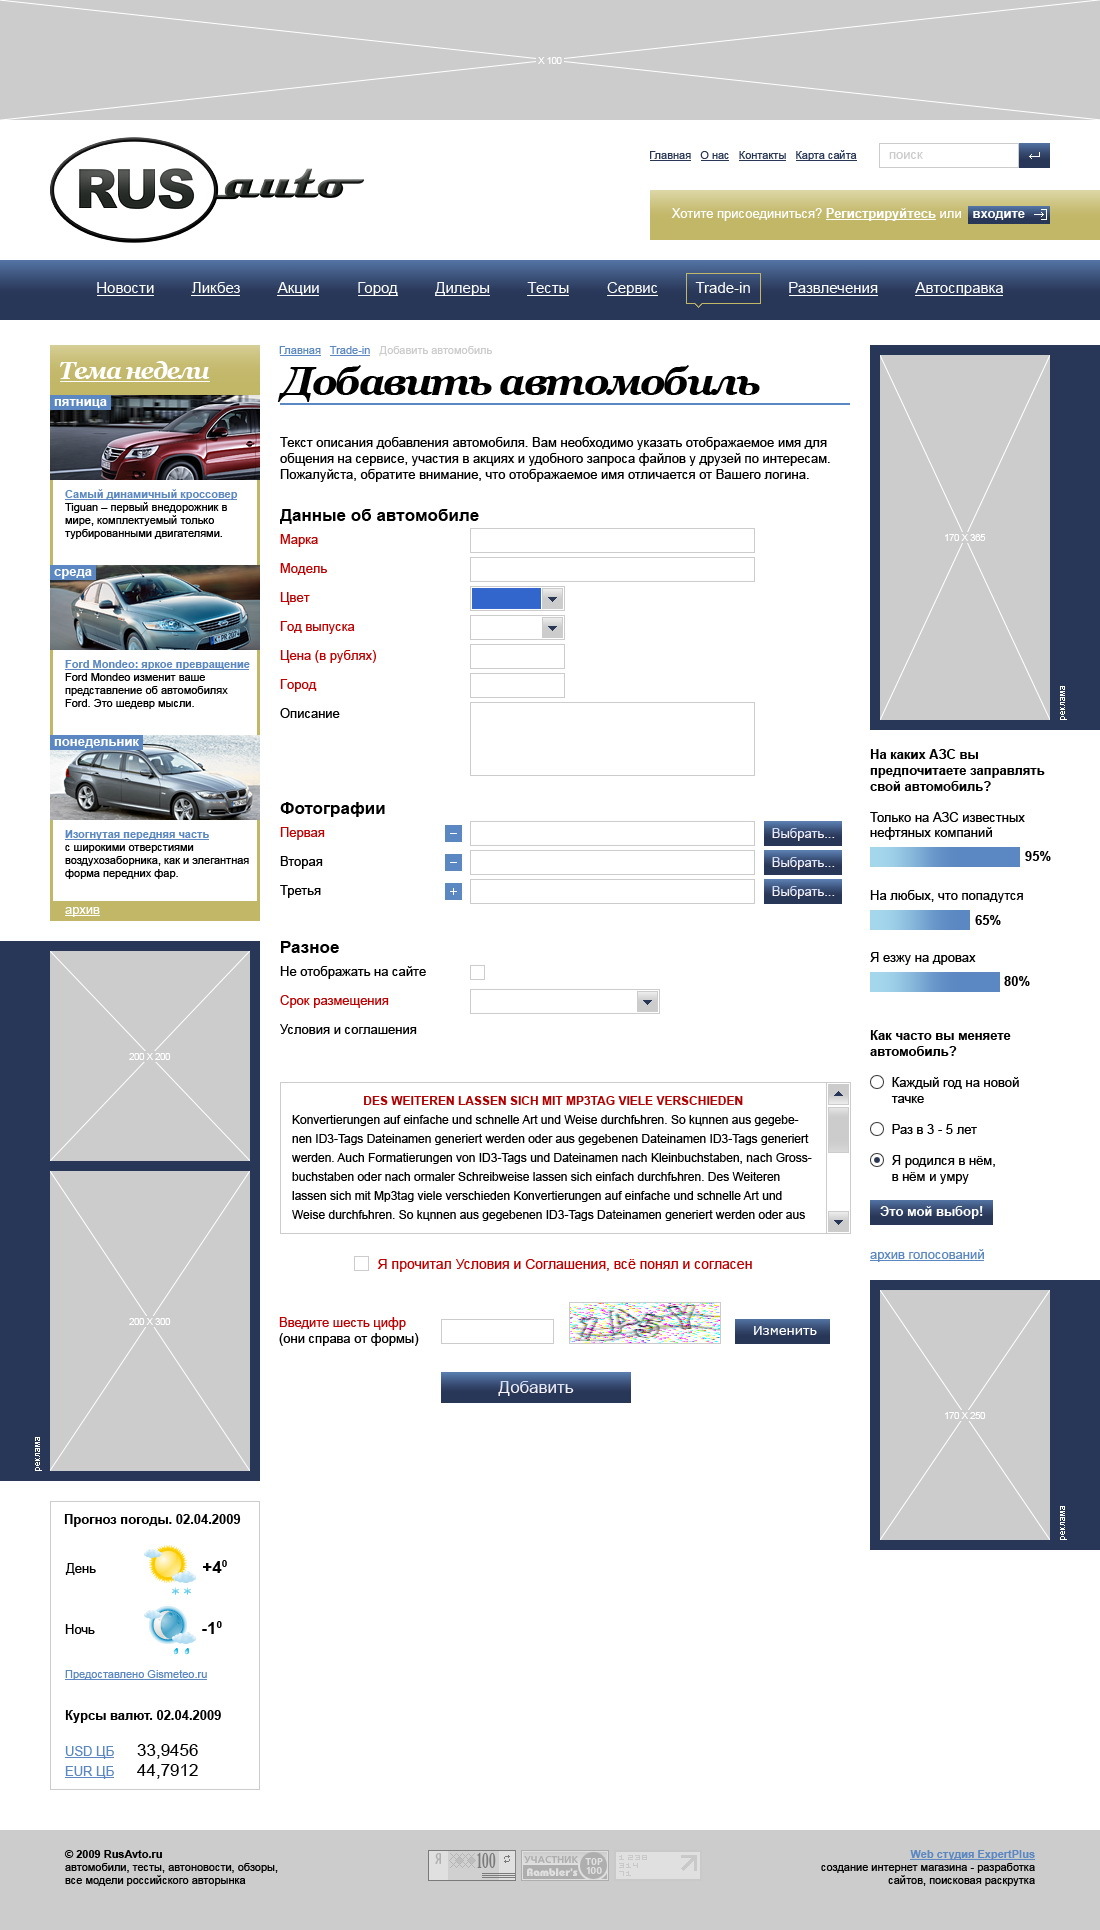 Автомобильный портал "RUS-auto"